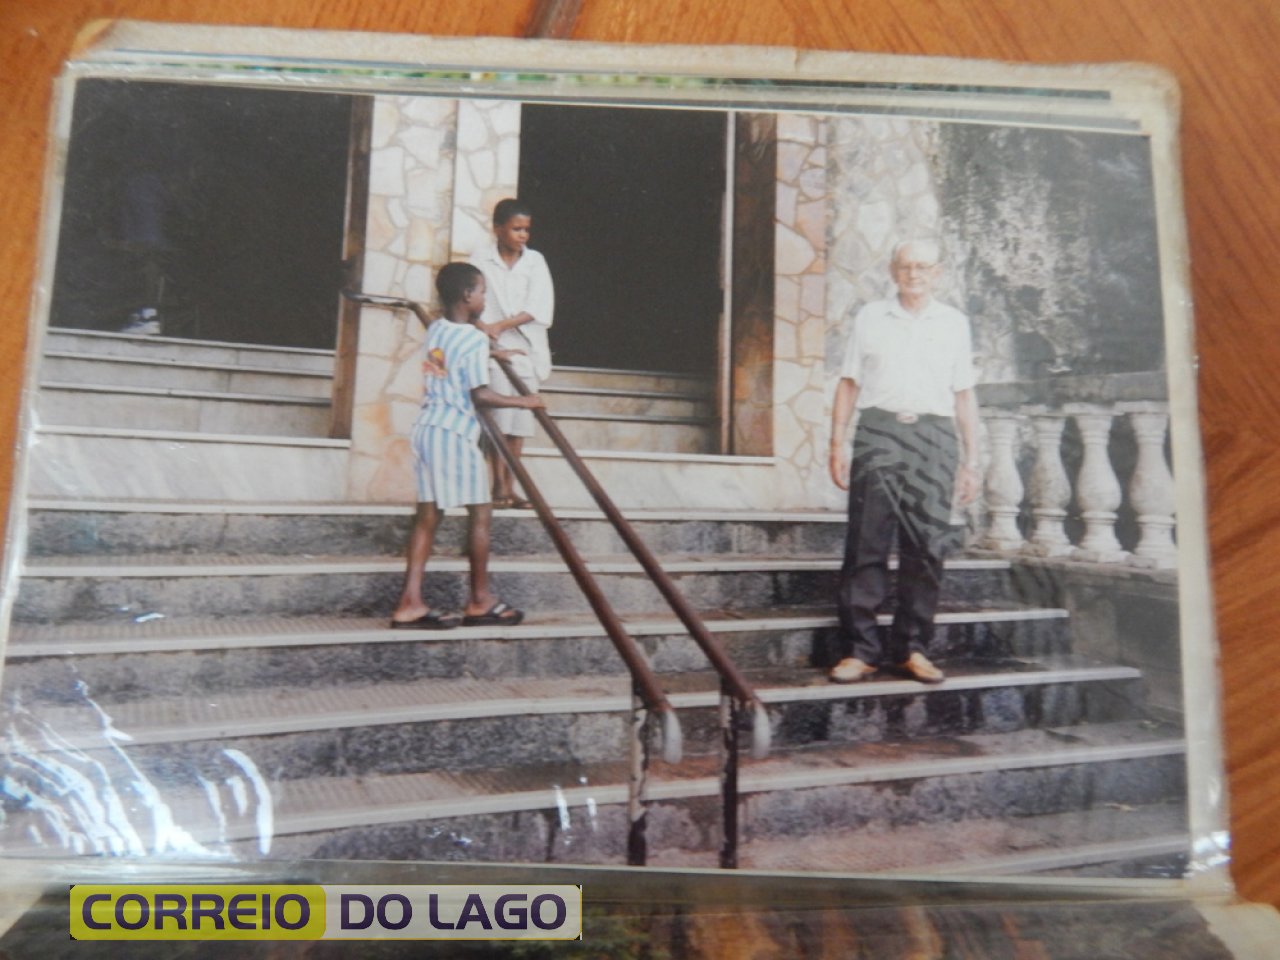 Freno na escada de acesso a Igreja Bom Jesus da Lapa Bahia. Década de 1990.